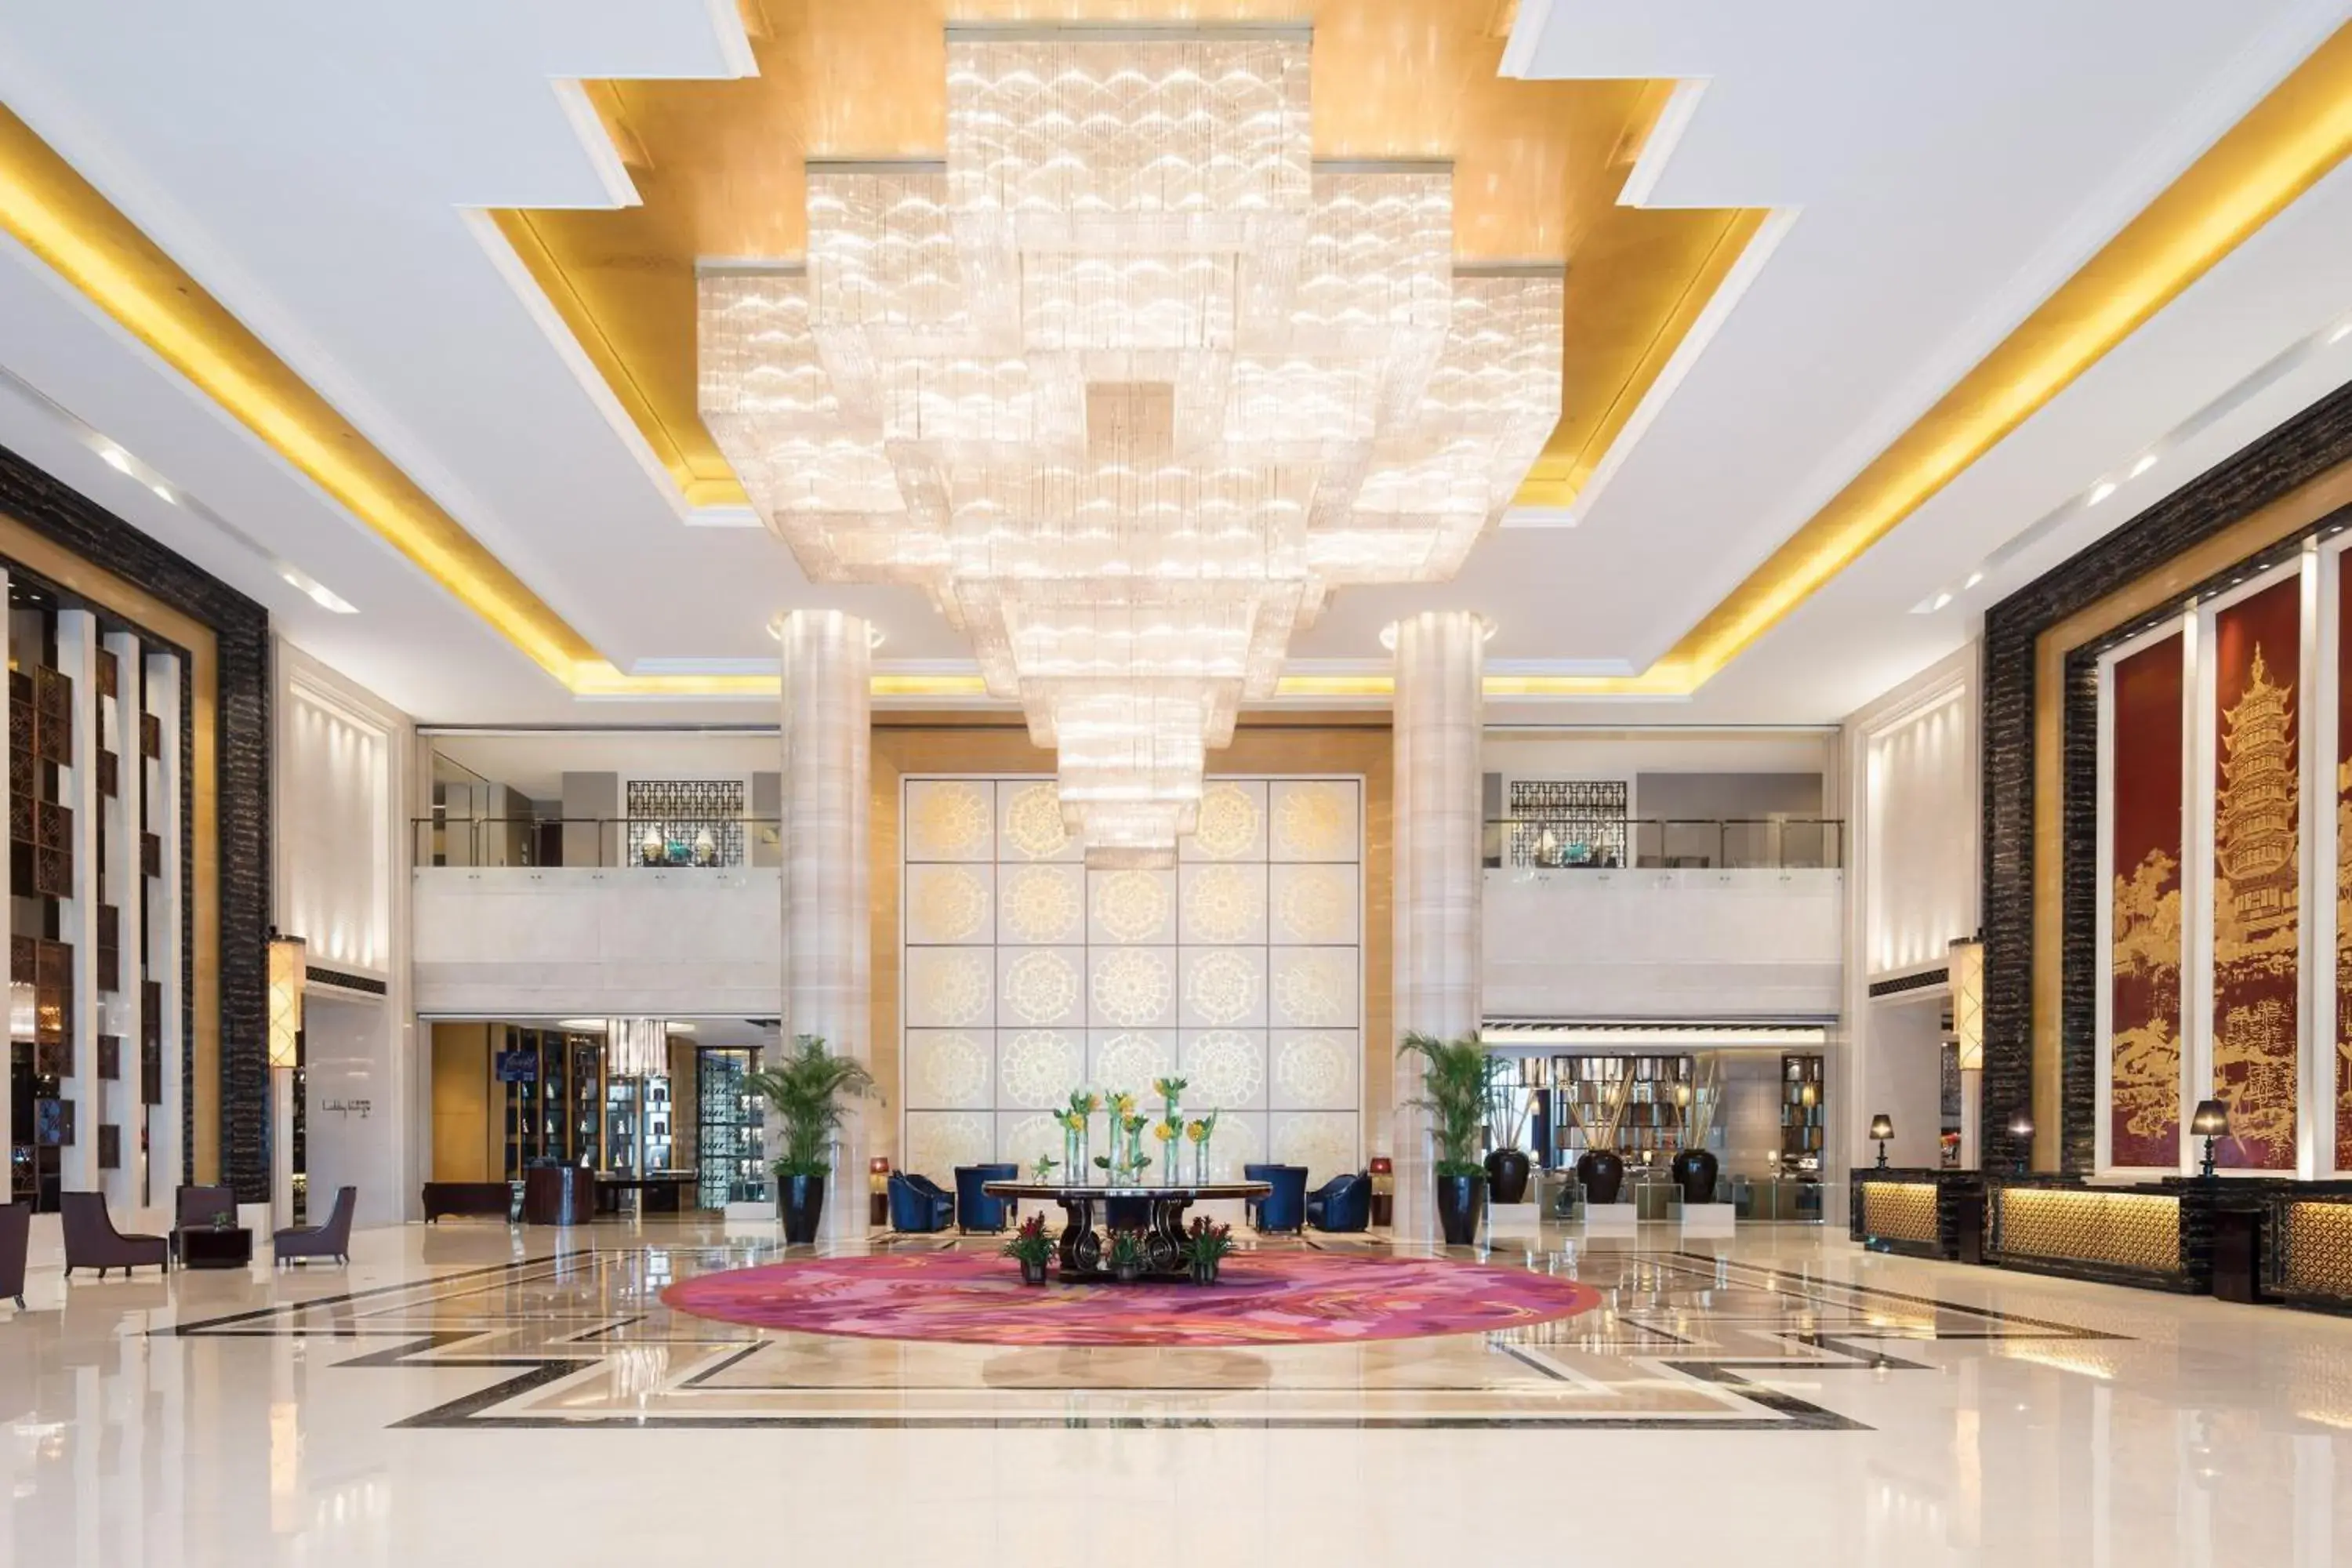 Lobby or reception in Sheraton Changzhou Xinbei Hotel